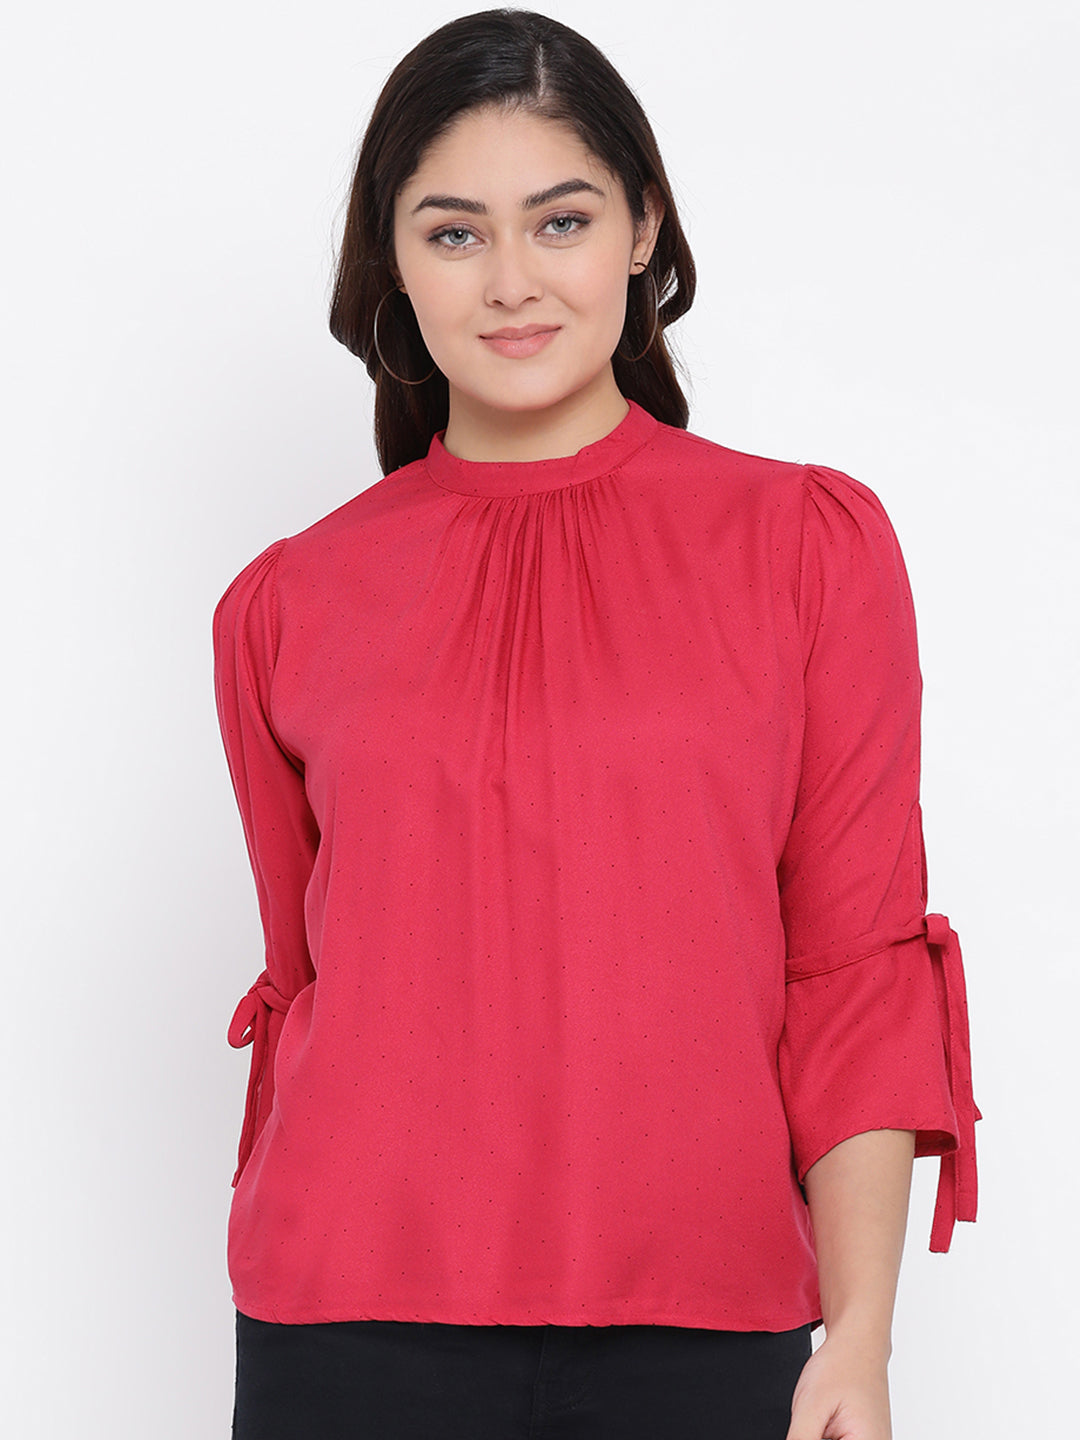 Red Printed Mandarin Collar Tops - Women Tops